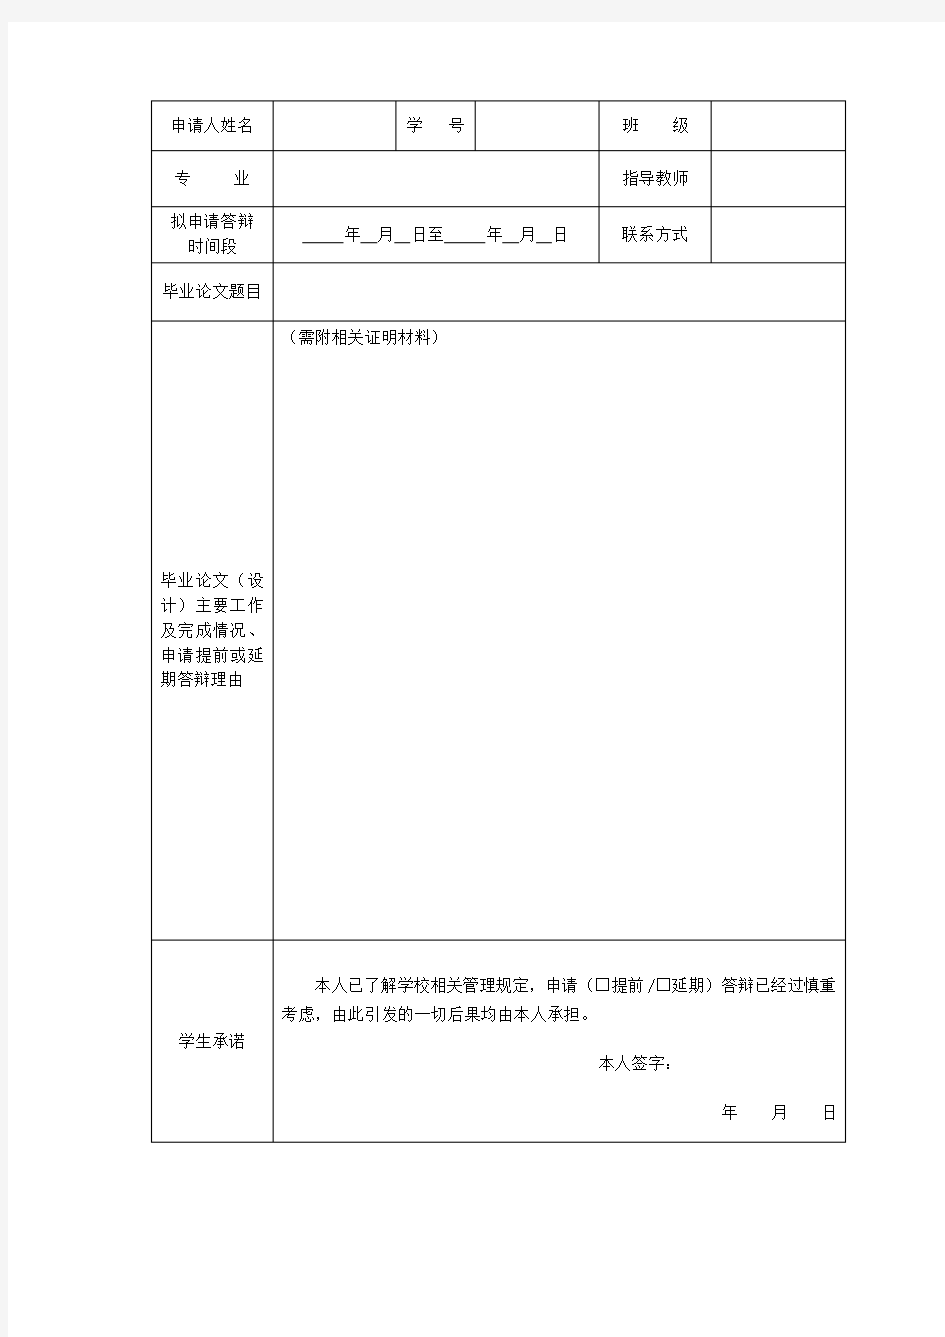 北京林业大学本科毕业论文(设计)答辩申请表【模板】